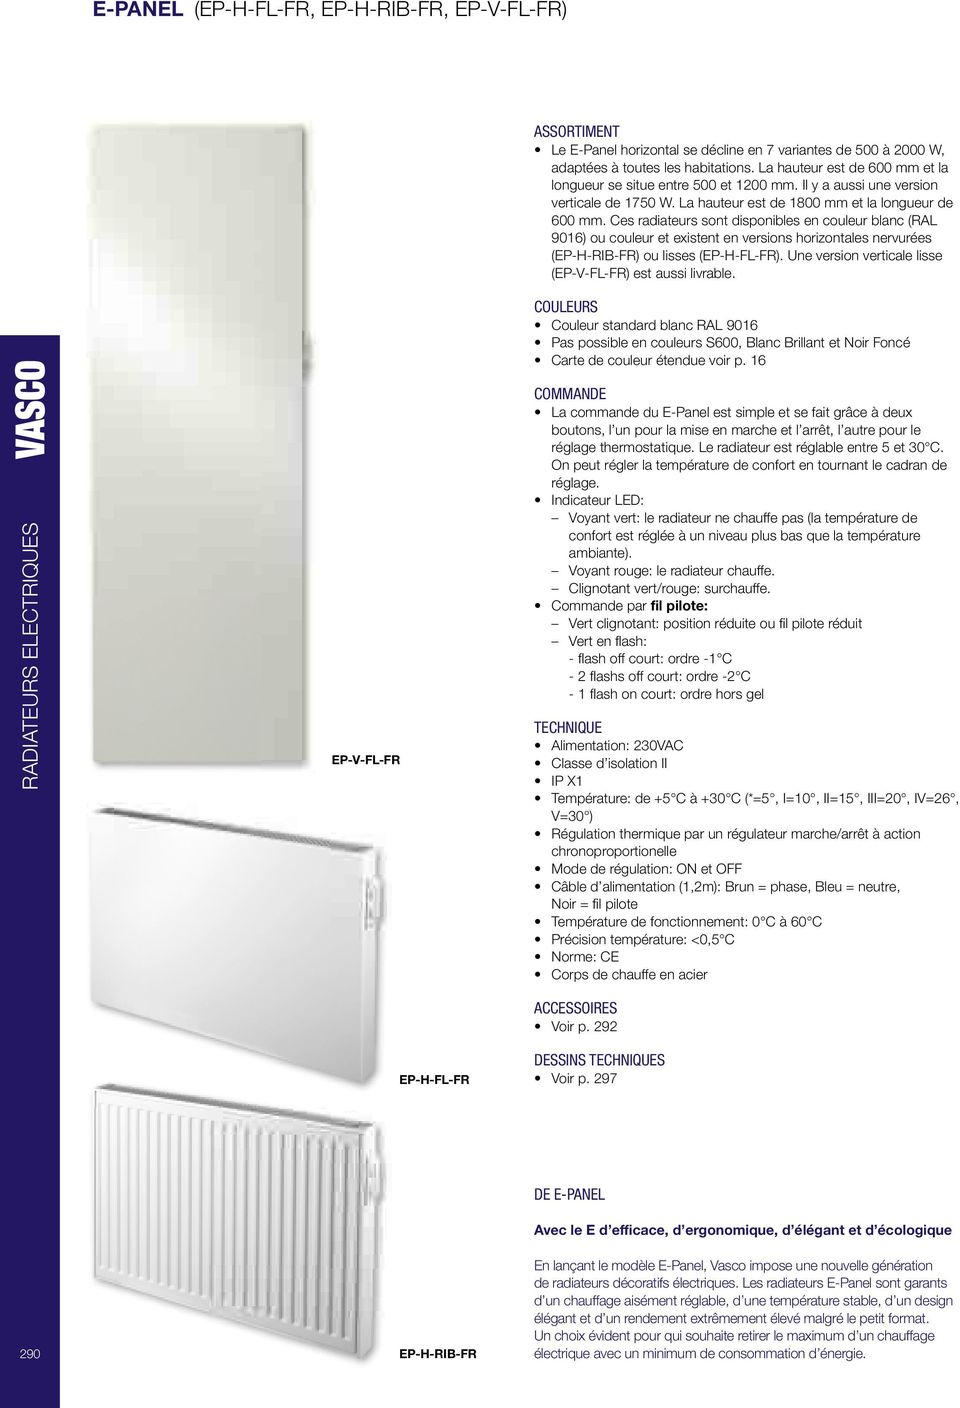 Ces radiateurs sont disponibles en couleur blanc (RAL 9016) ou couleur et existent en versions horizontales nervurées (EP-H-RIB-FR) ou lisses (EP-H-FL-FR).